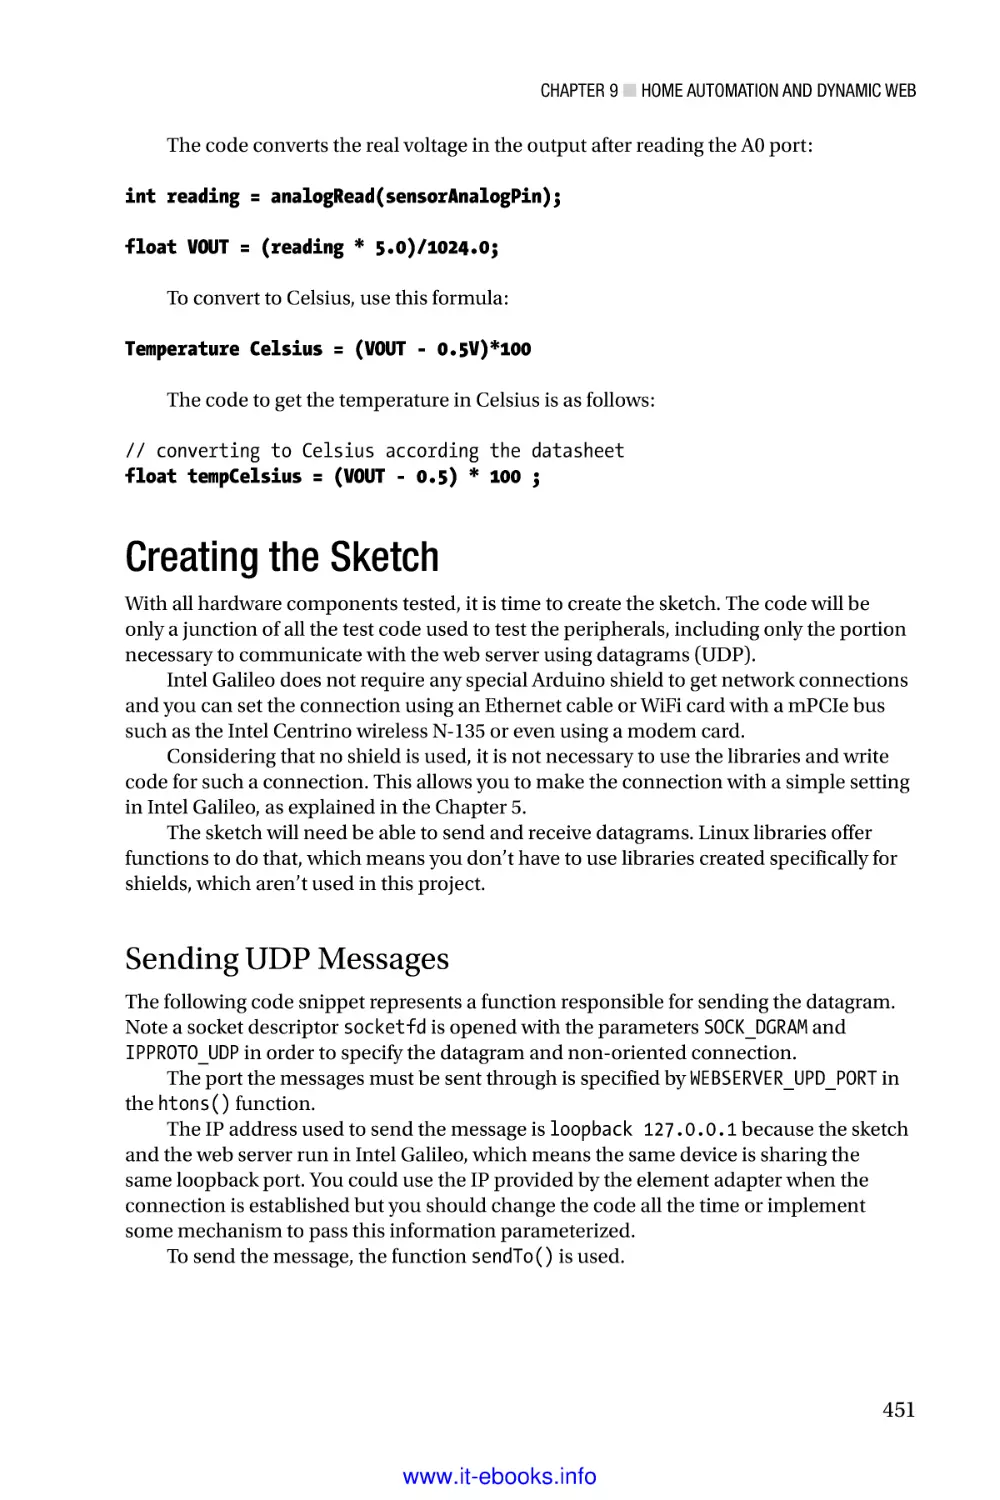 Creating the Sketch
Sending UDP Messages